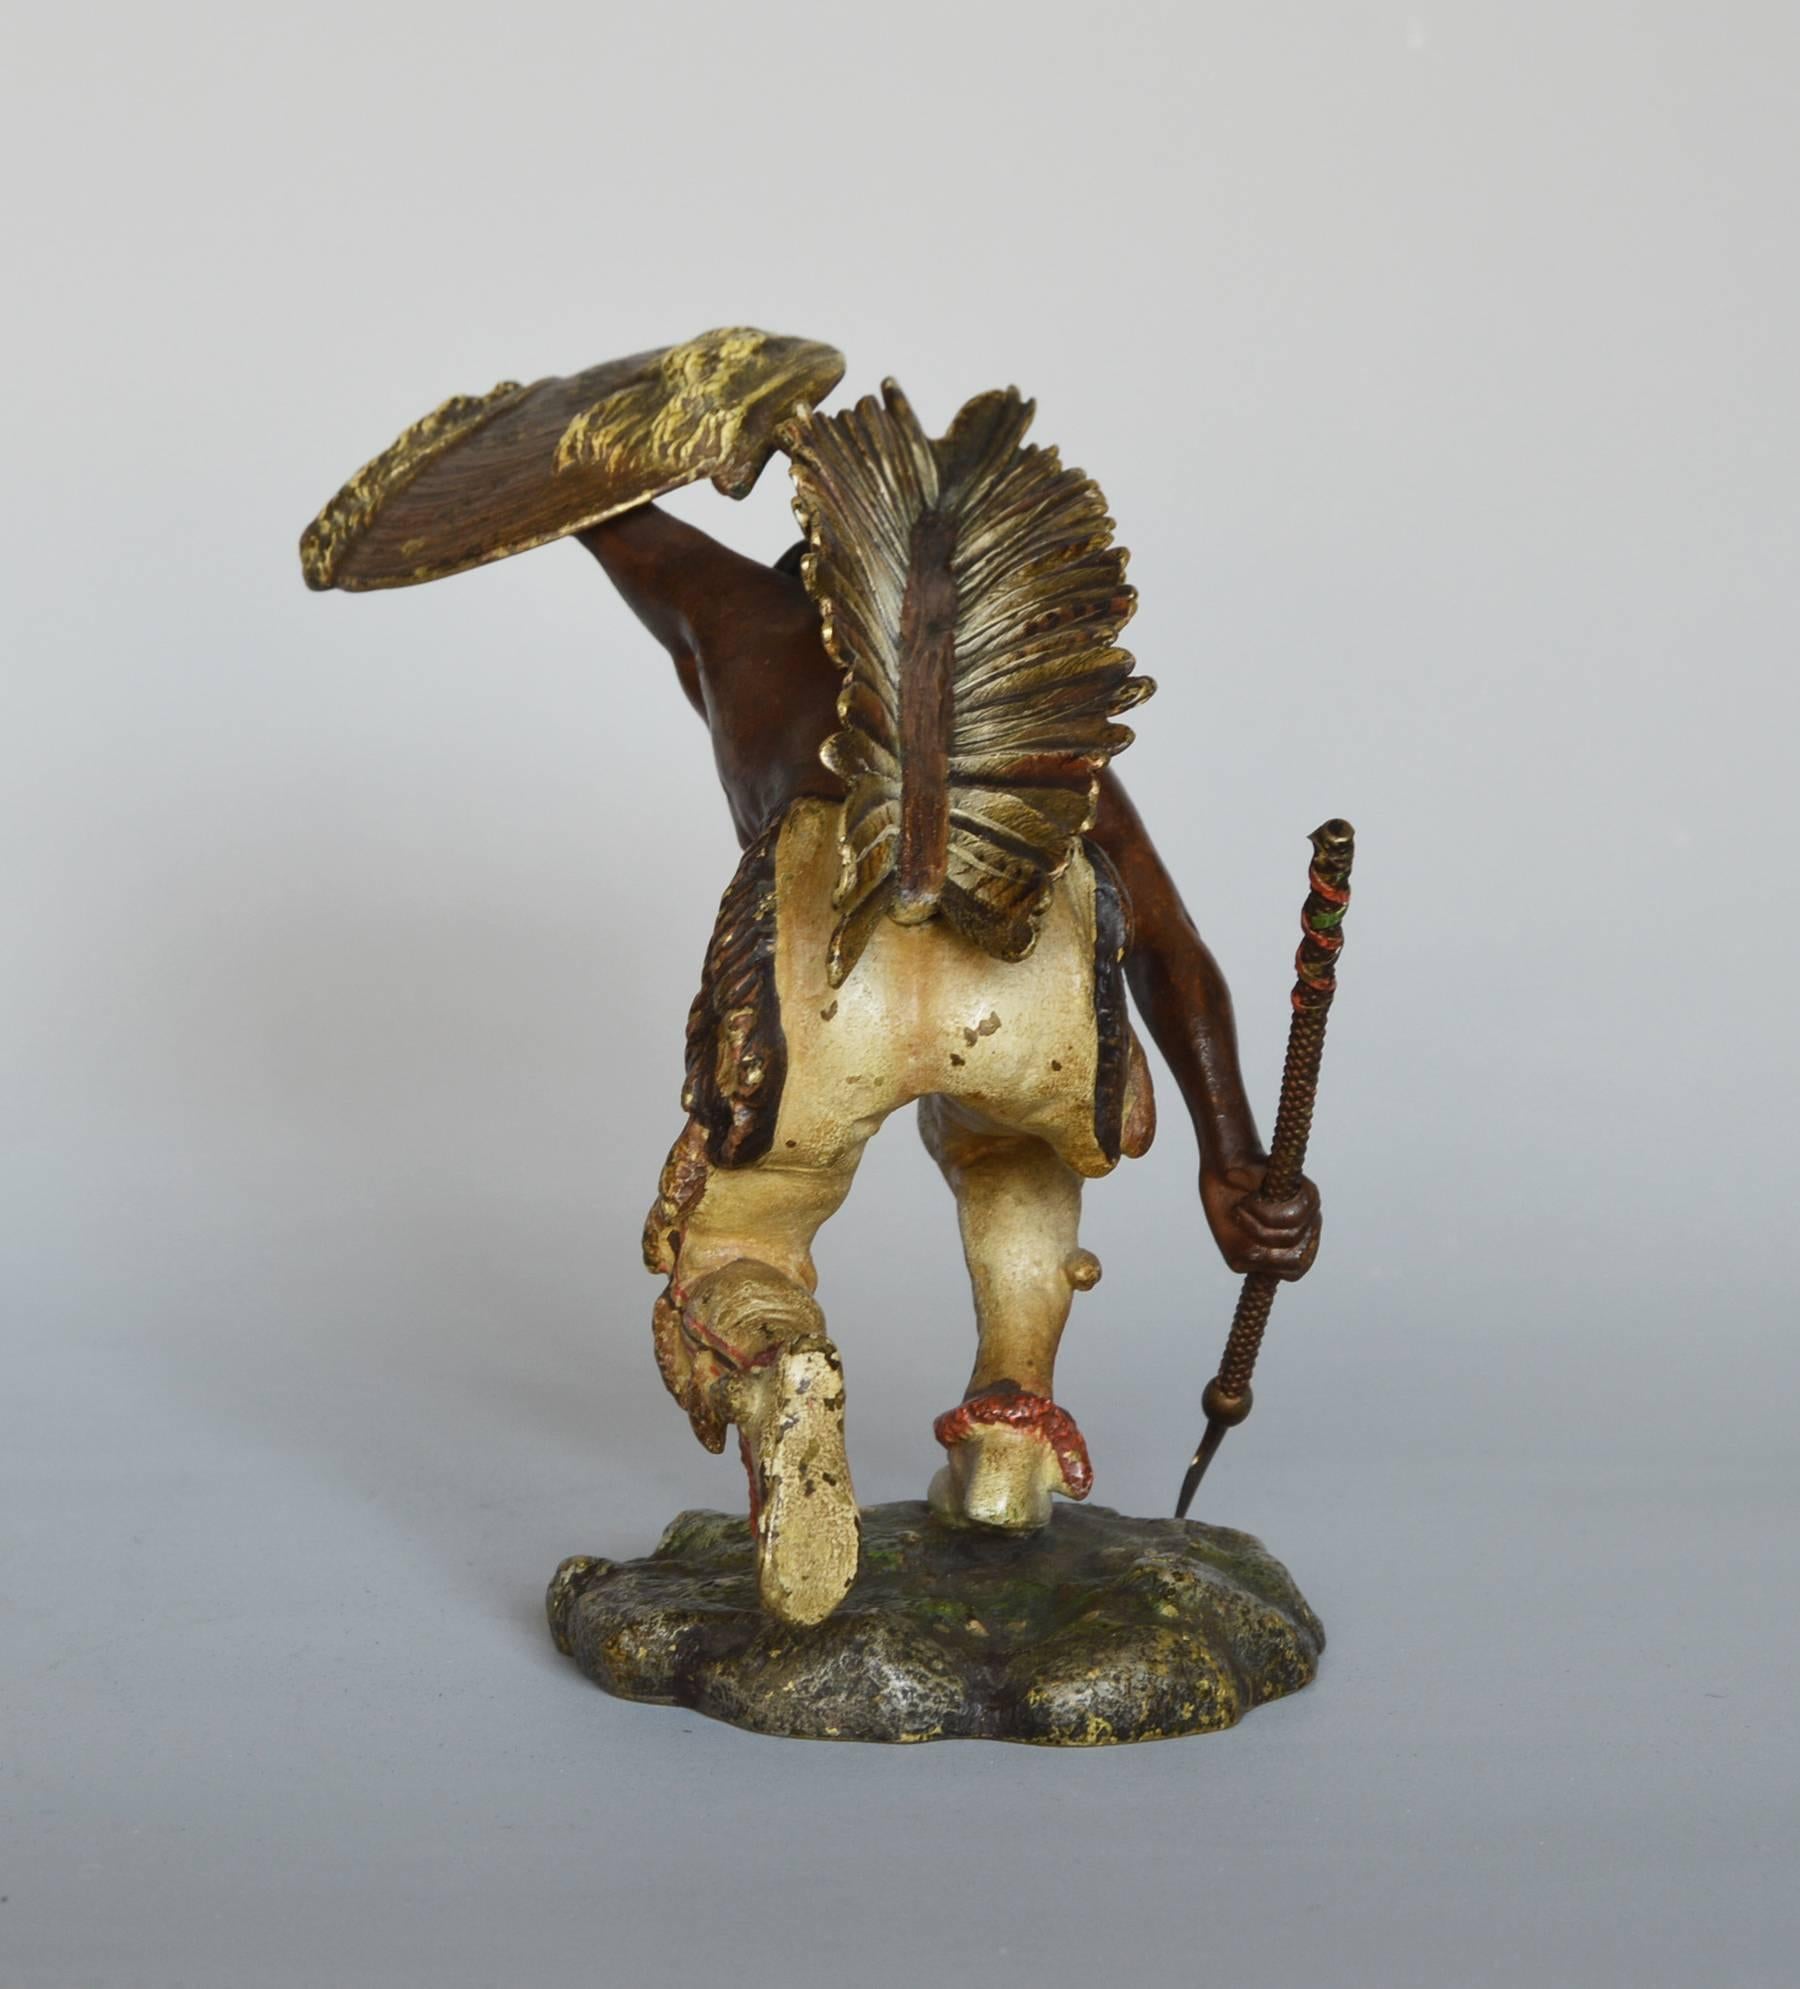 Native American Indian Crouching, bronze sculpture - Sculpture by Franz Bergmann